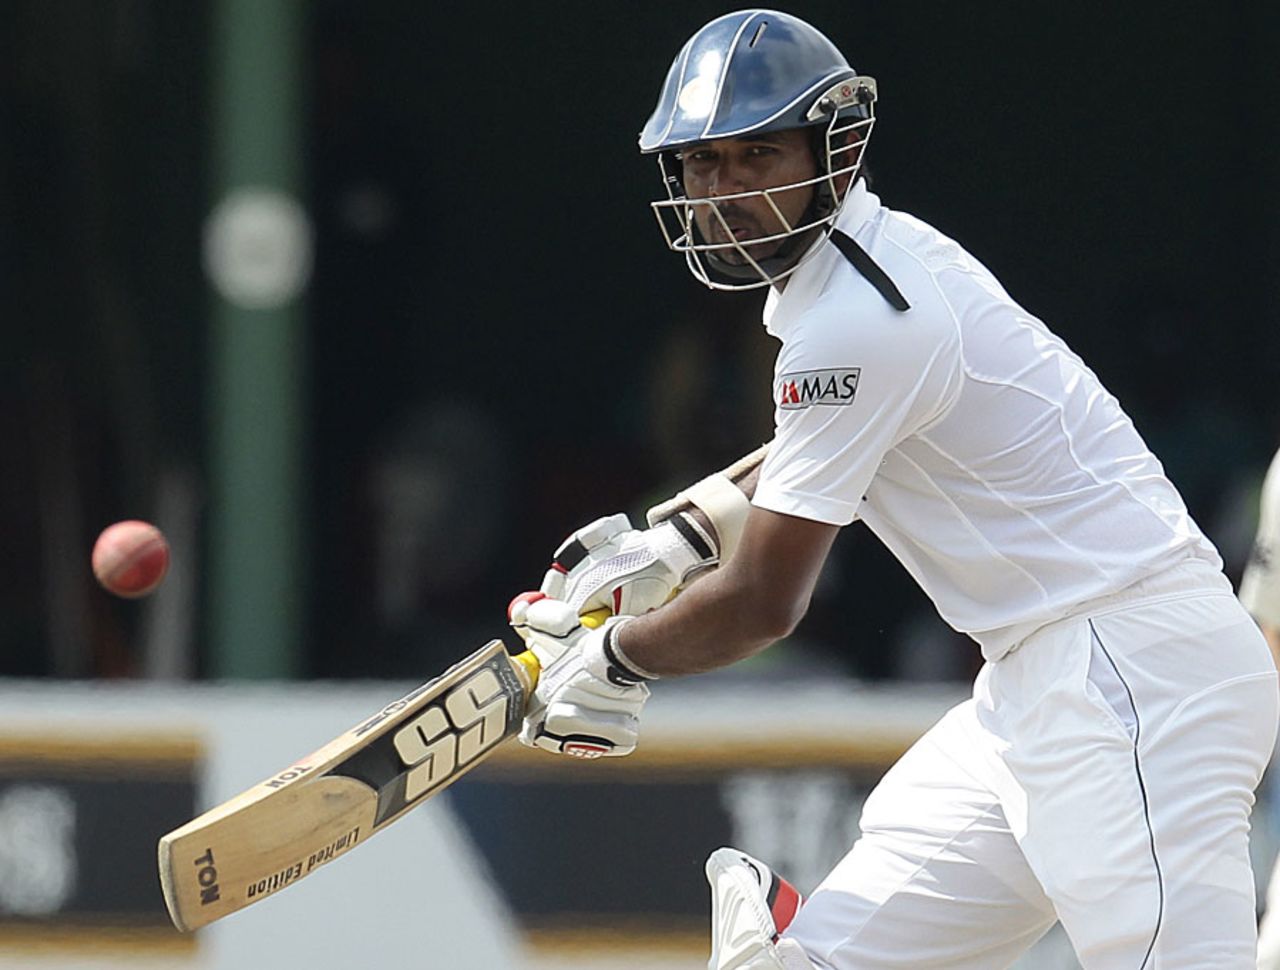 Tharanga Paranavitana cuts, Sri Lanka v New Zealand, 2nd Test, Colombo, 3rd day, November 27, 2012